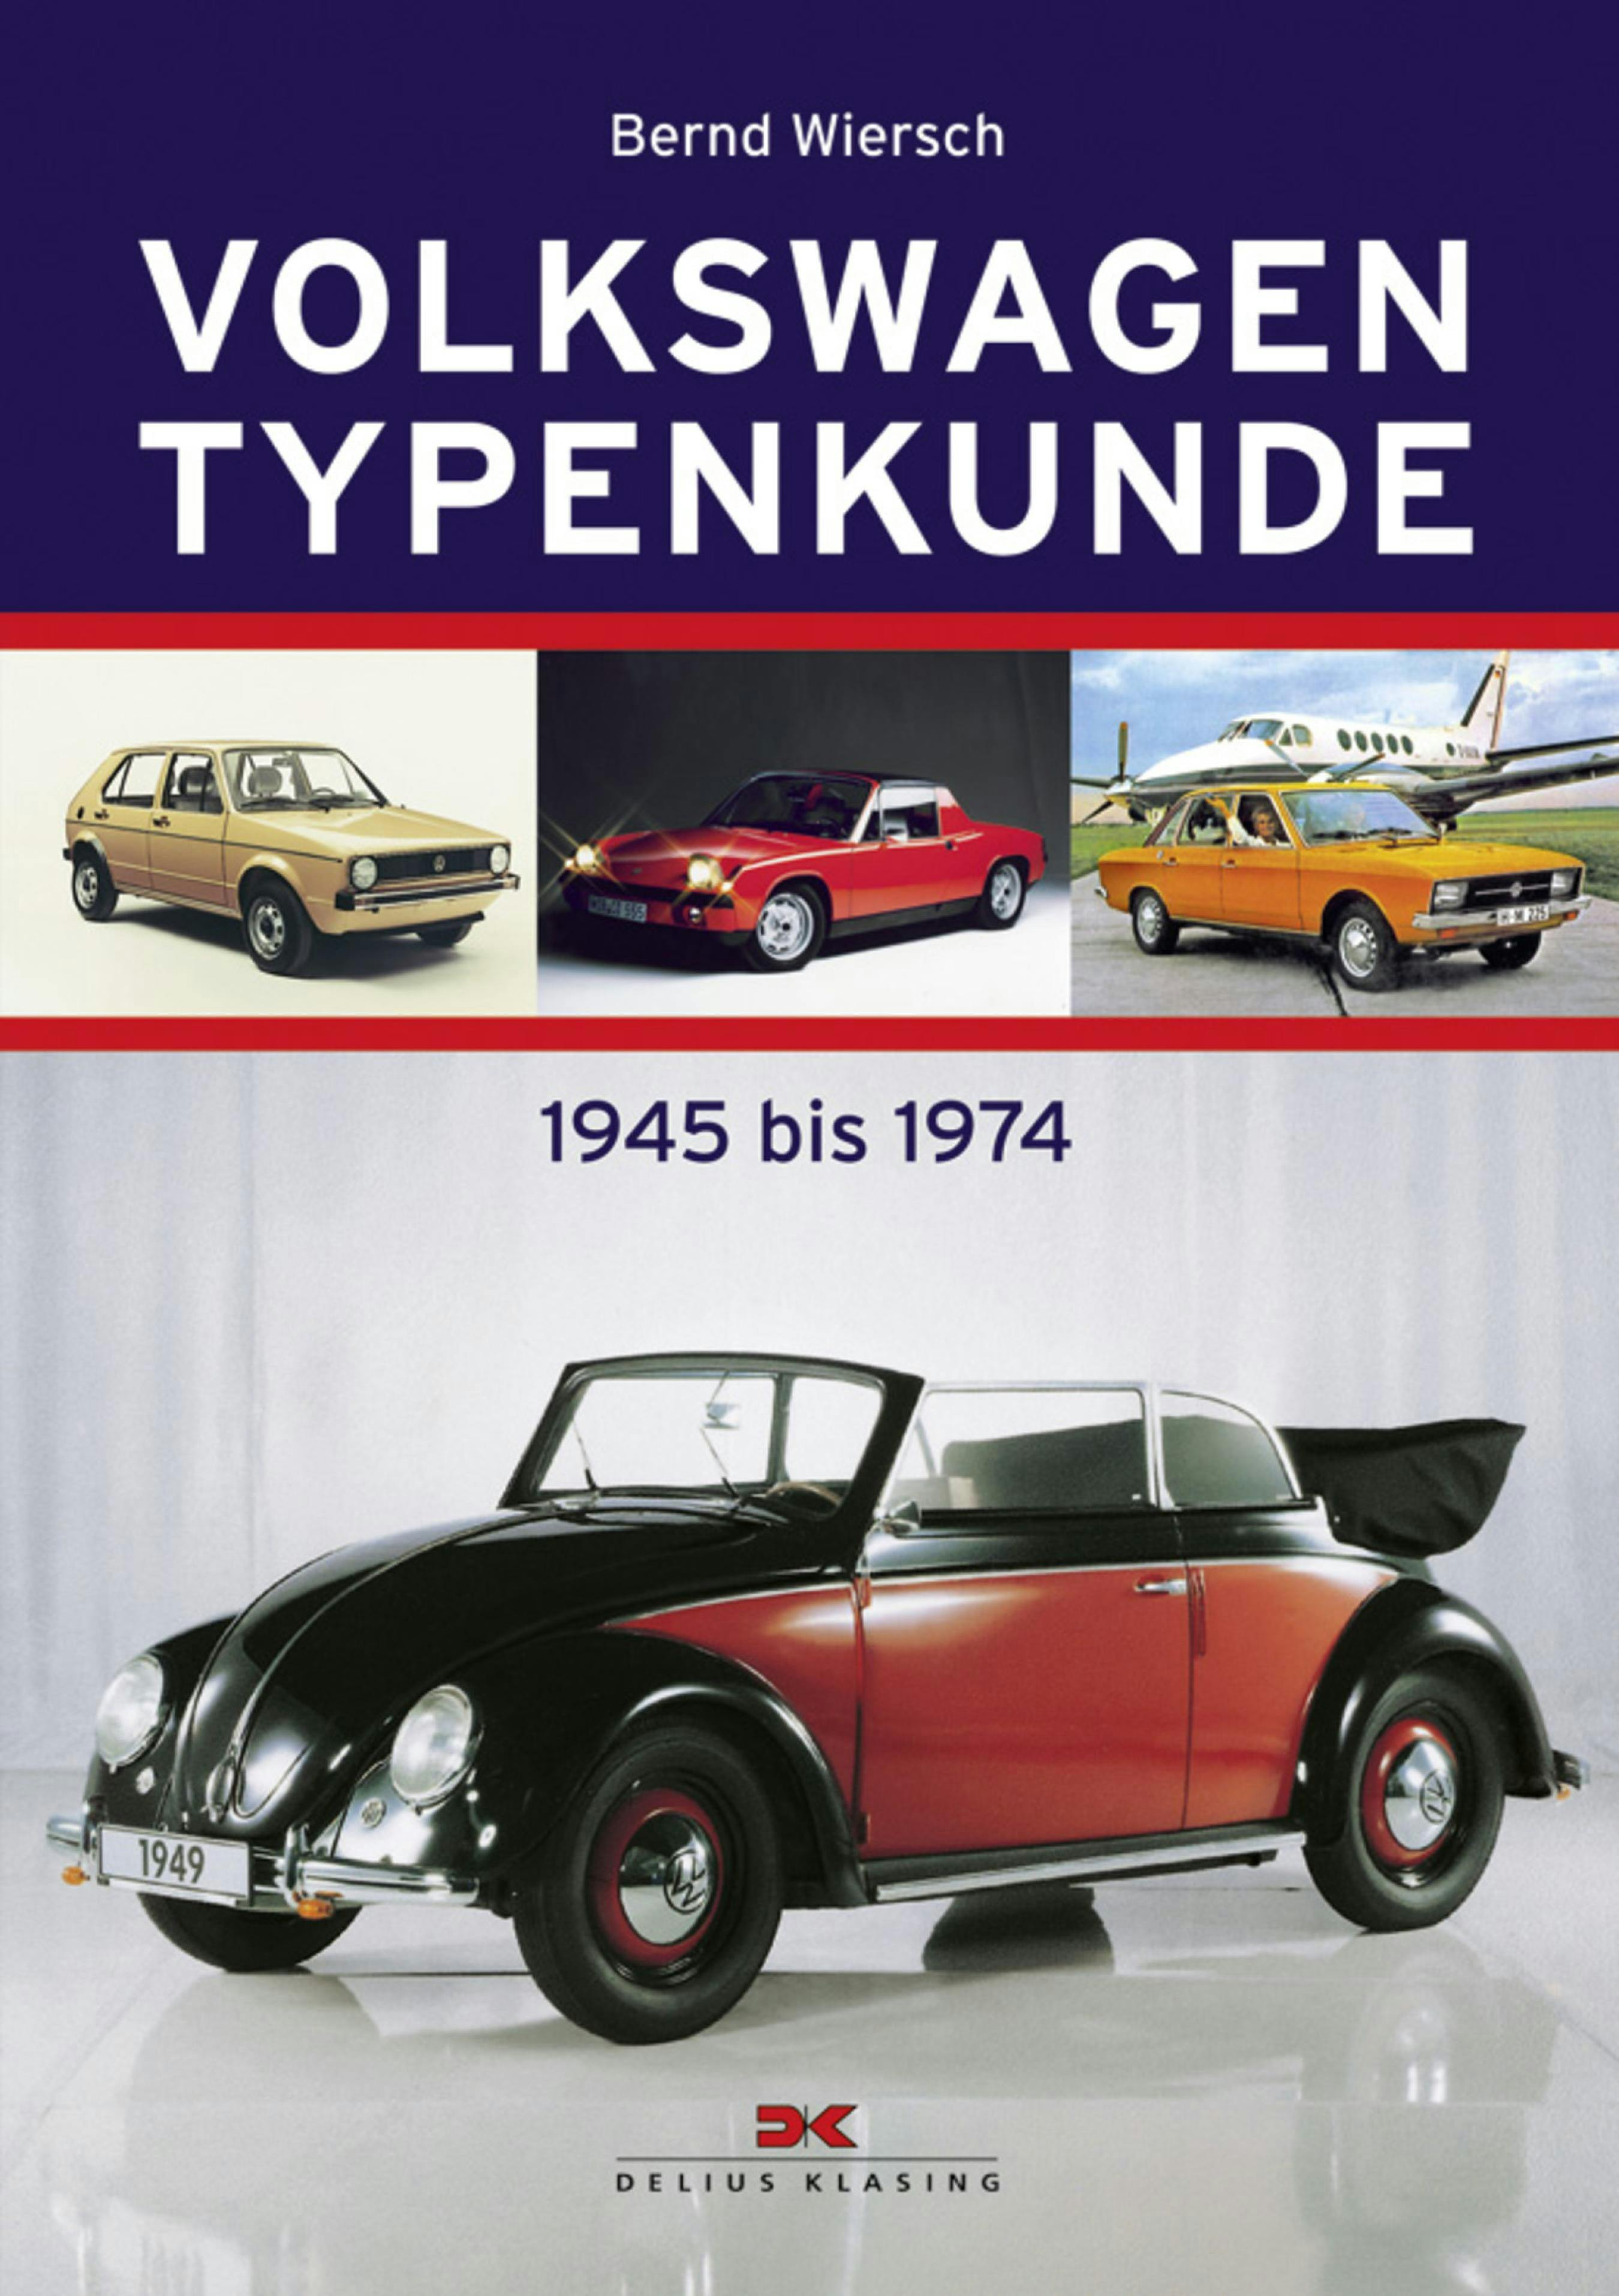 Volkswagen Typenkunde: 1994 bis 2005 - Bernd Wiersch